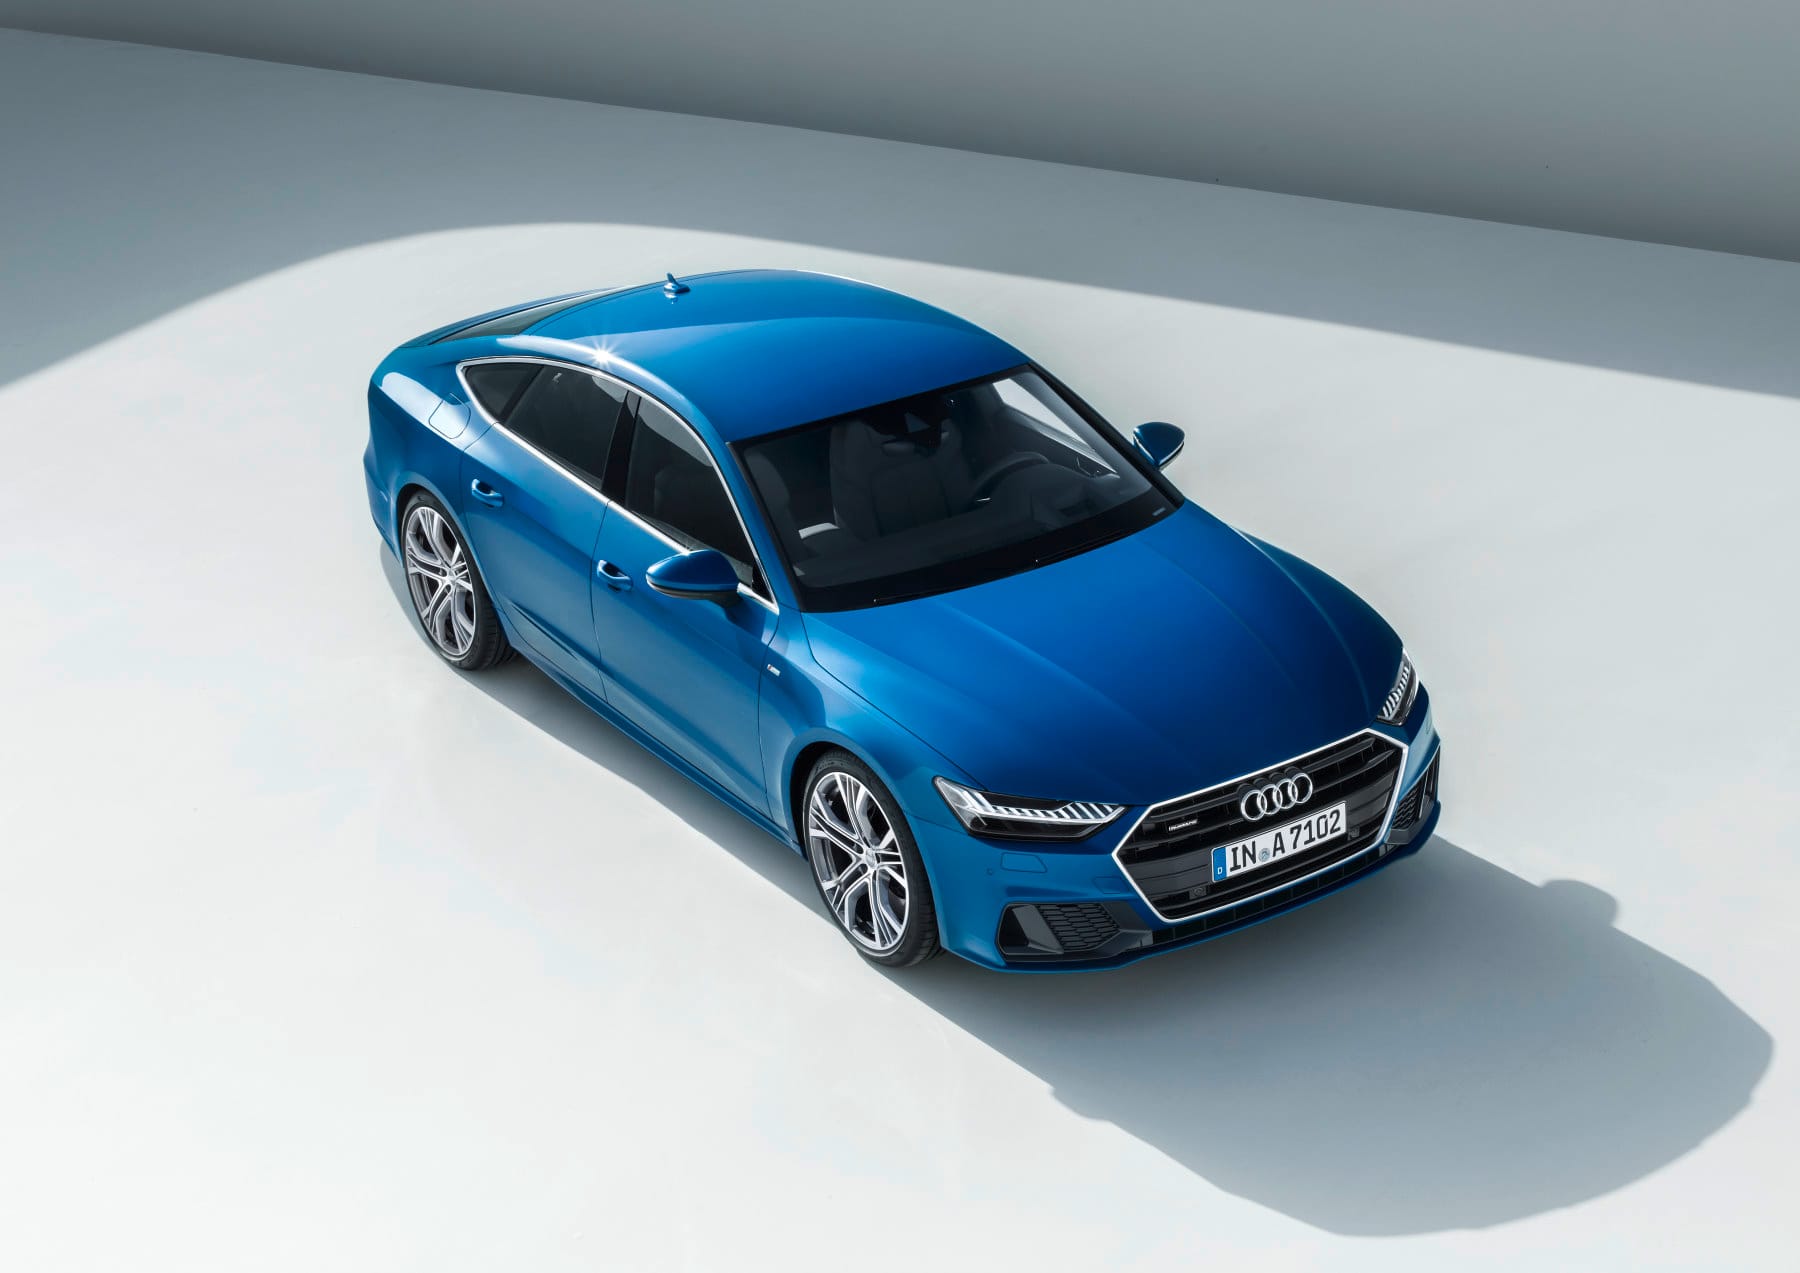 Zum Marktstart ist der Audi A7 nur als 3.0 TFSI mit 250 kW / 340 PS verfügbar.